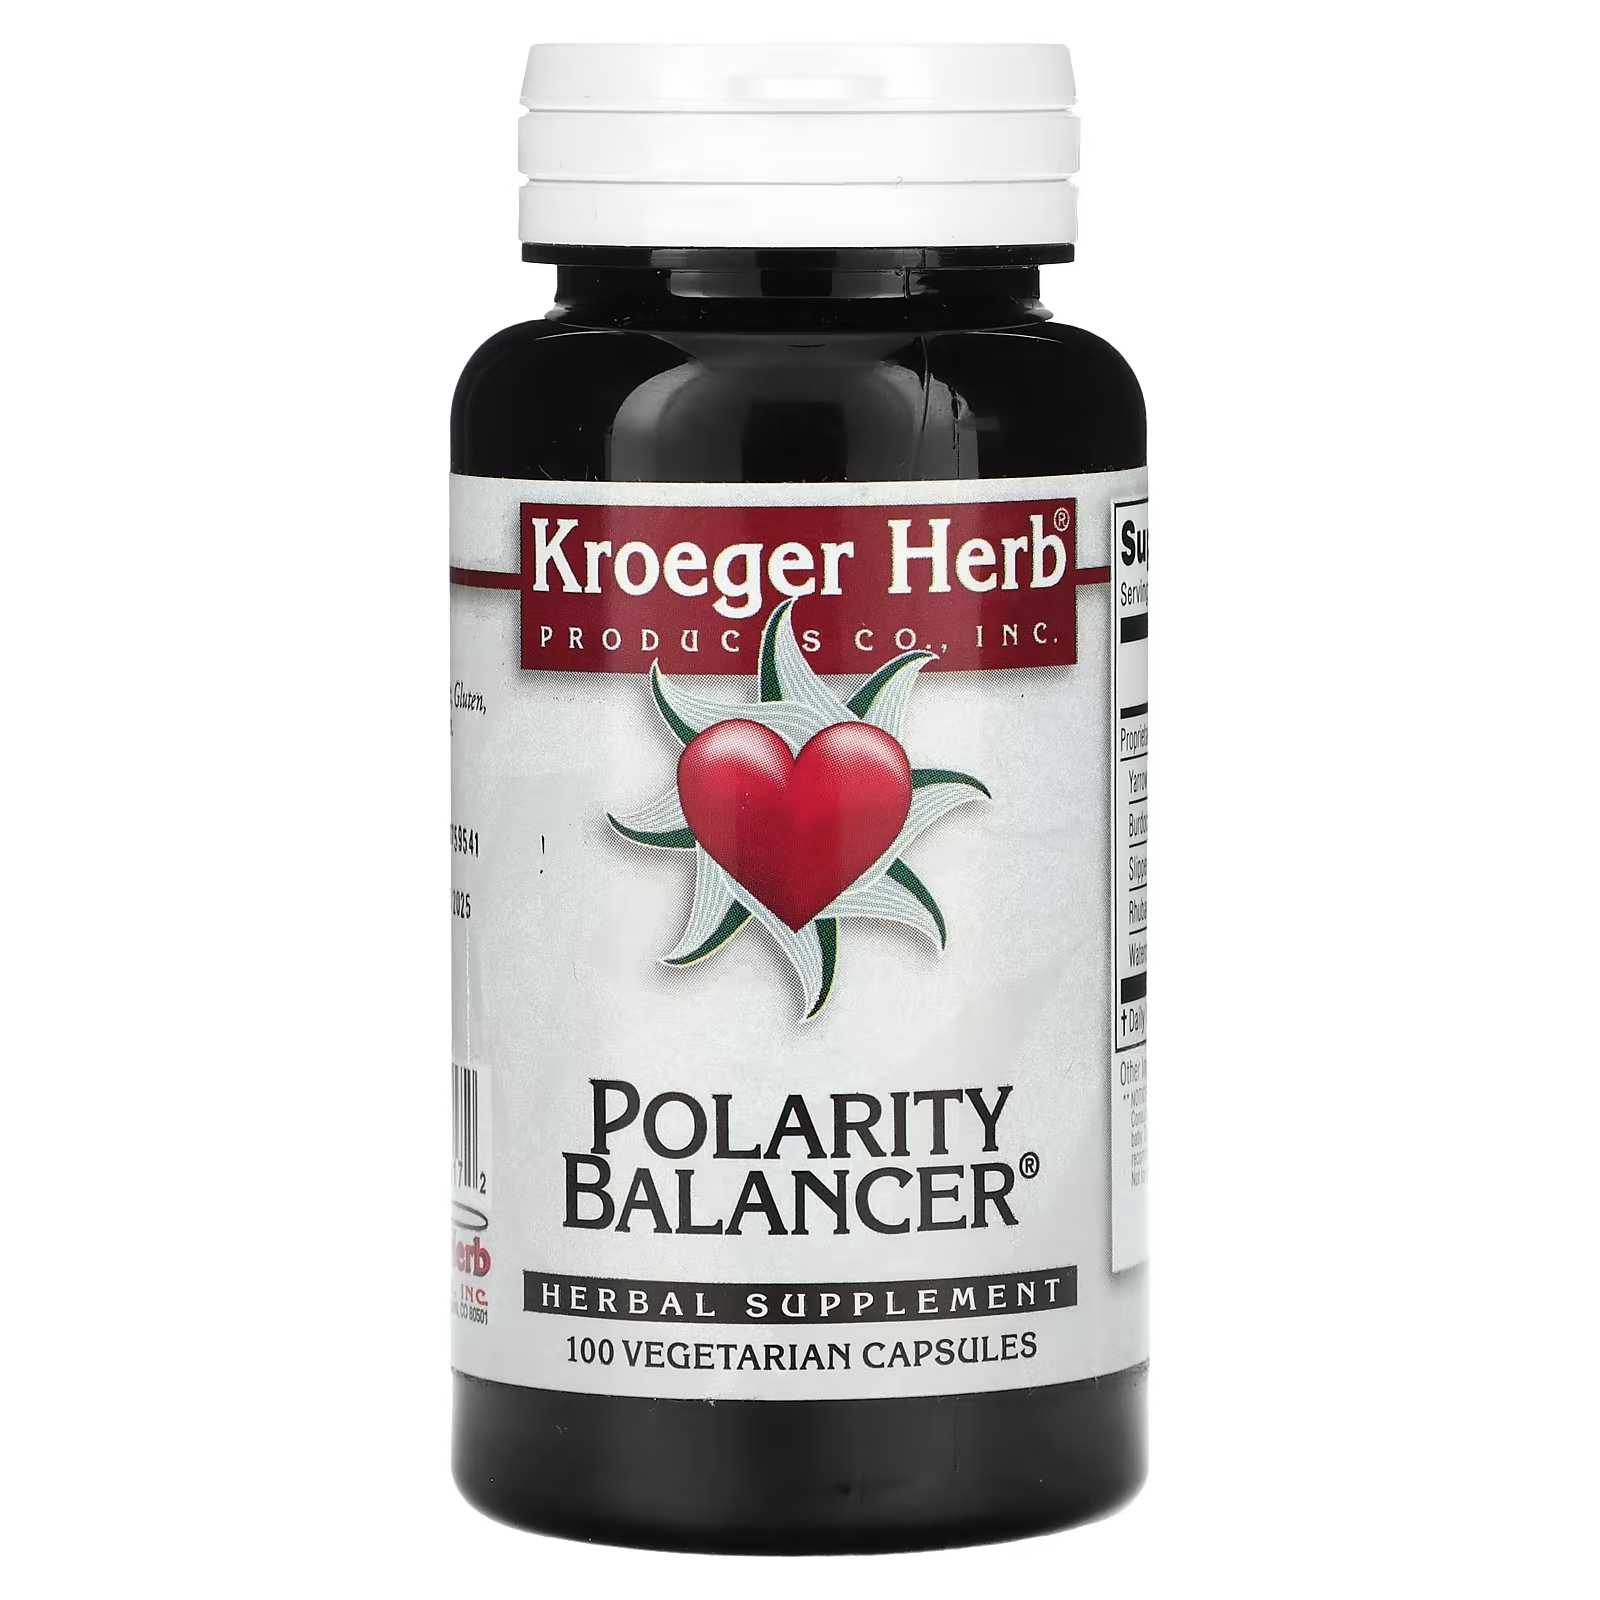 Растительная добавка Kroeger Herb Co балансировщик полярности, 100 капсул растительная добавка kroeger herb co spk formula 100 капсул